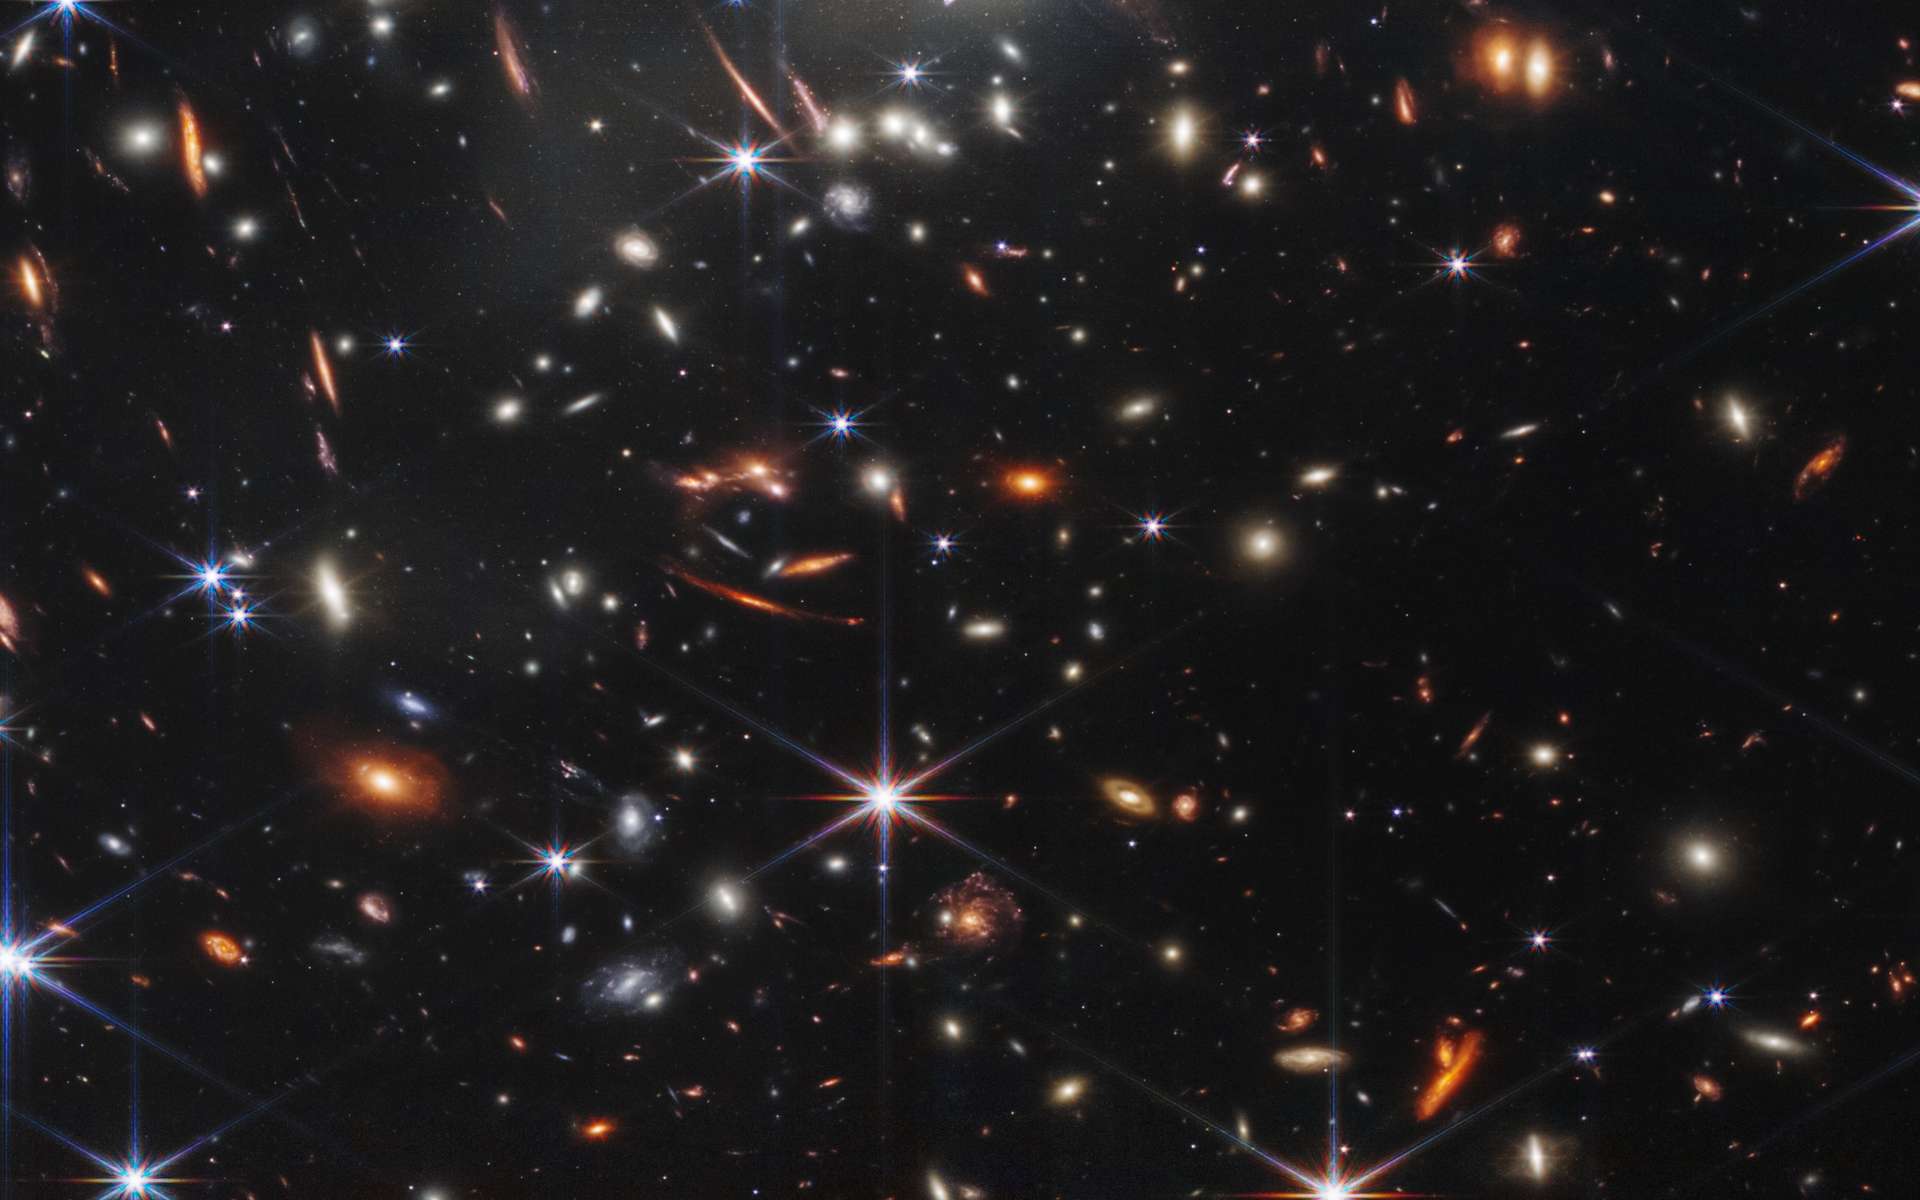 Le télescope James-Webb a débusqué une surprenante galaxie 350 millions d'années seulement après le Big Bang !